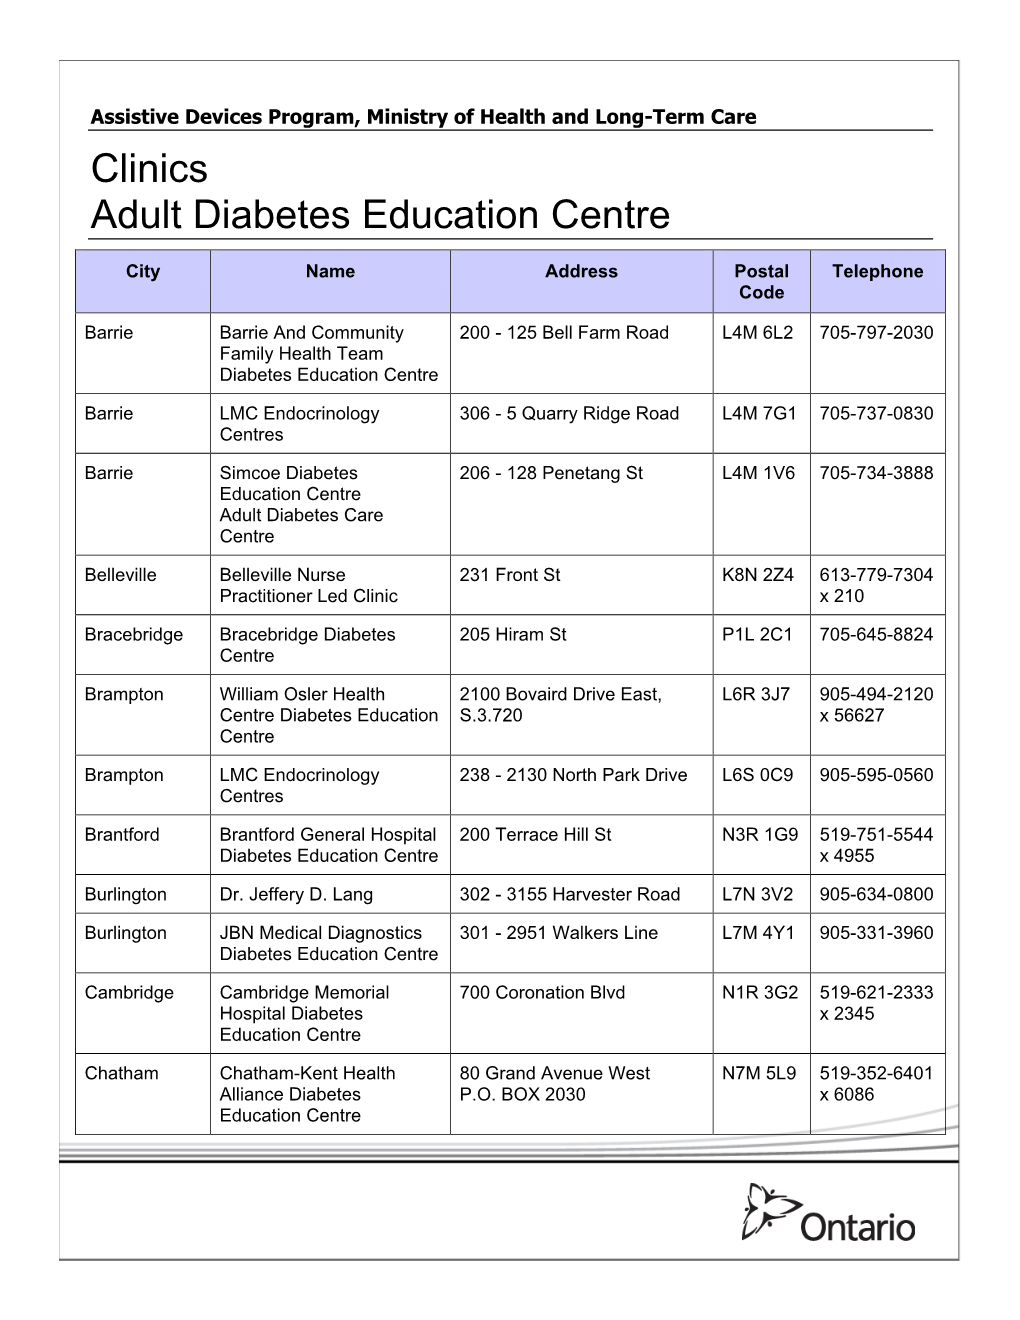 Clinics Adult Diabetes Education Centre